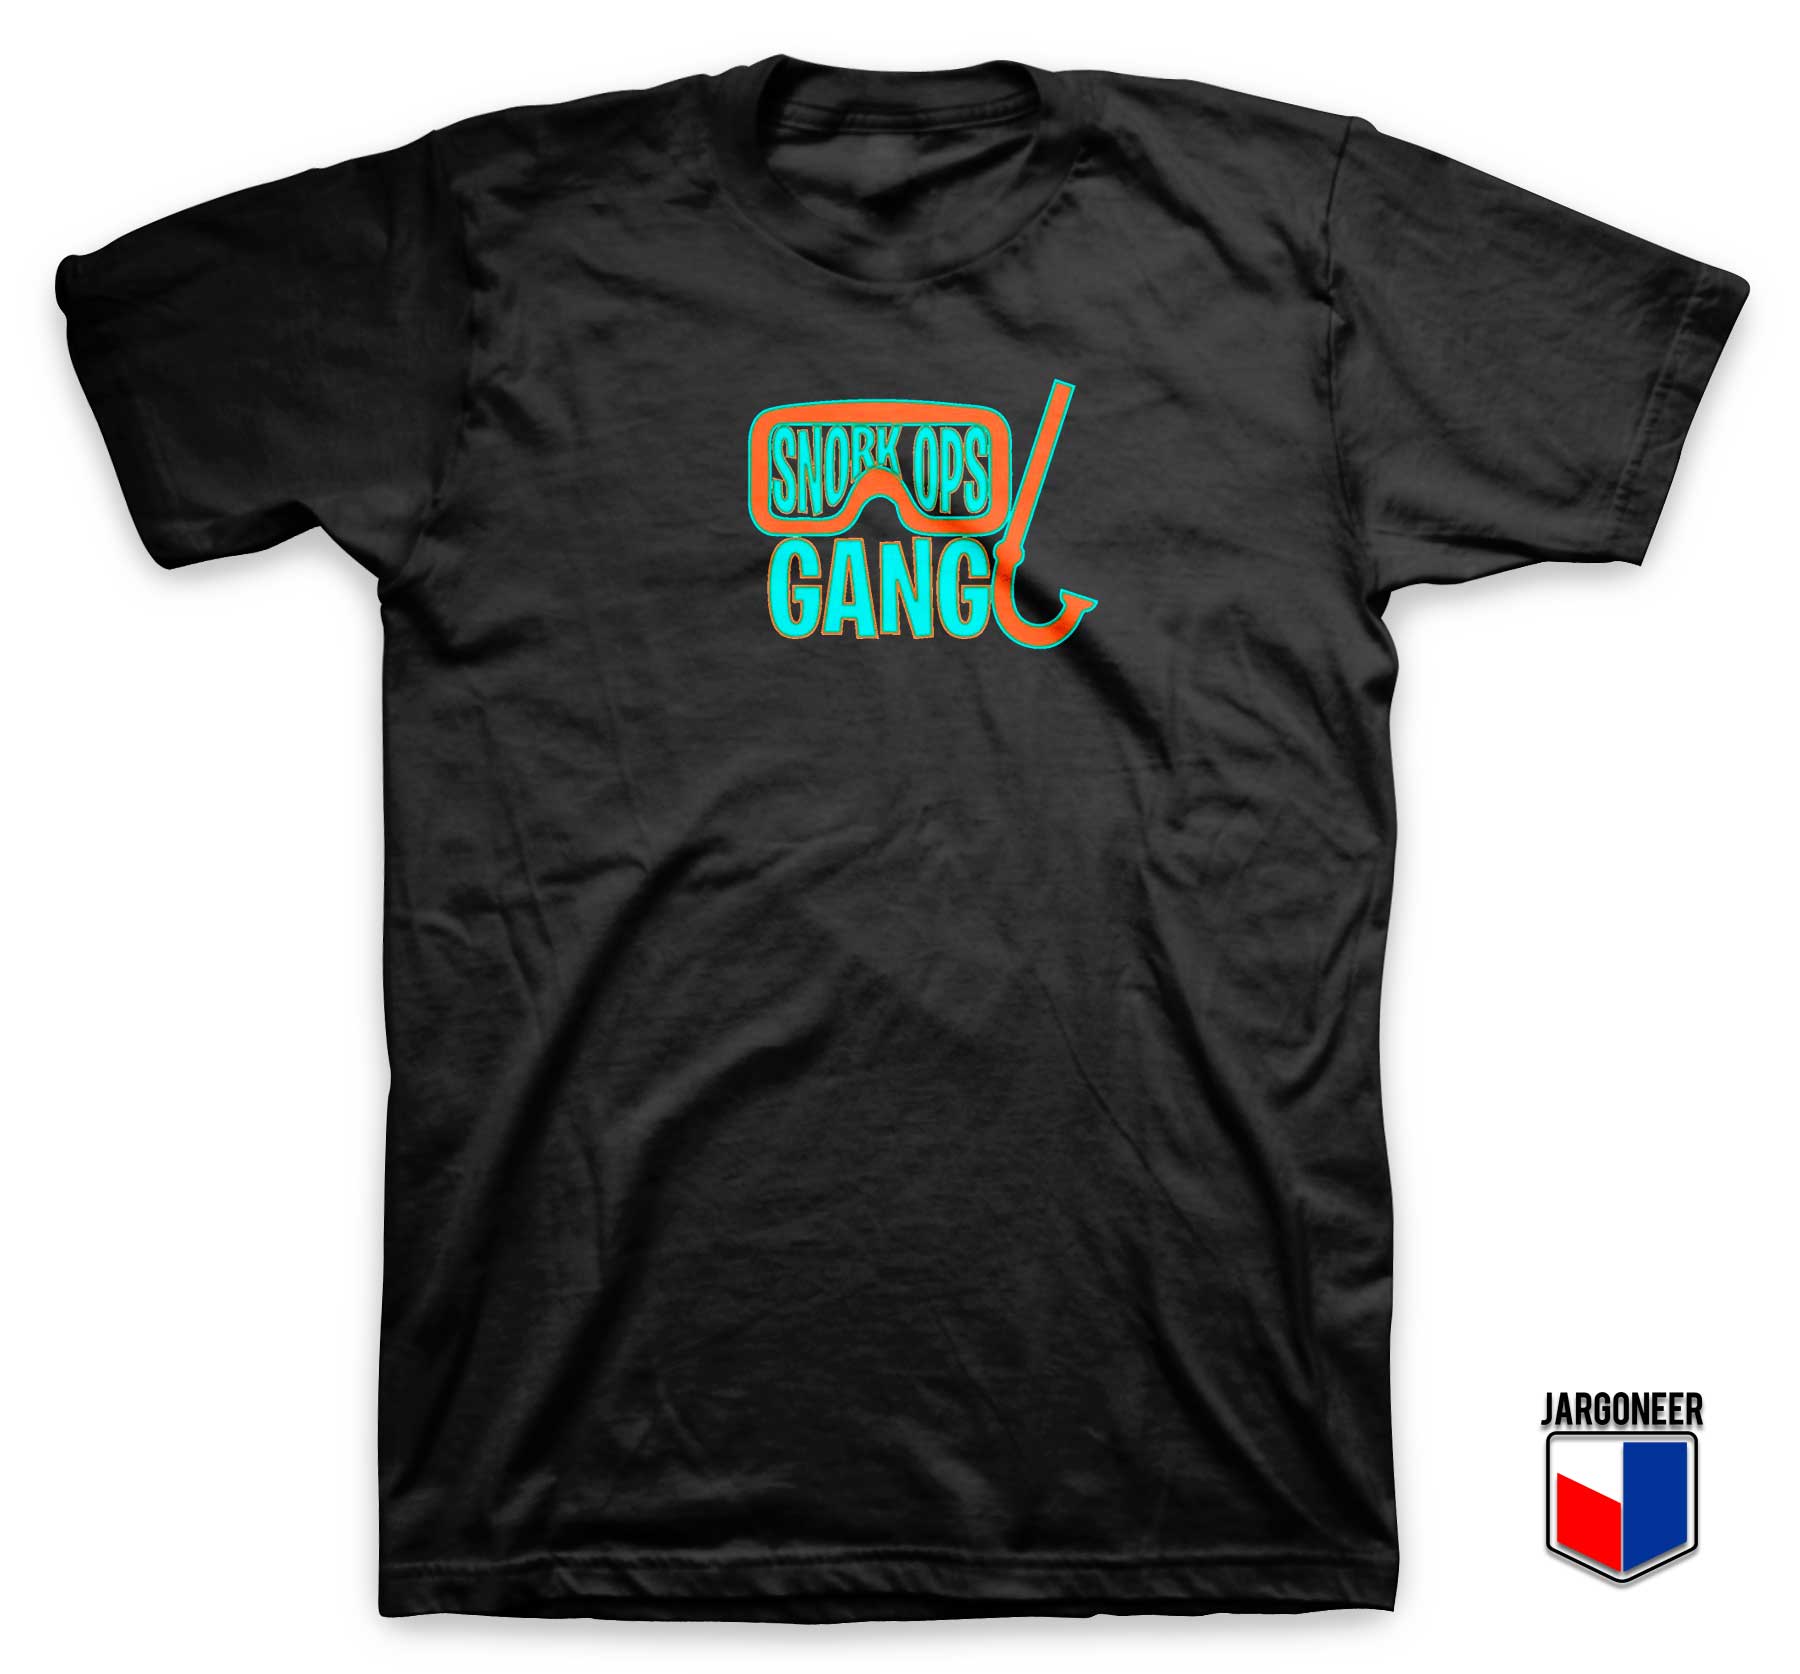 Snork Ops Gang T Shirt - Shop Unique Graphic Cool Shirt Designs